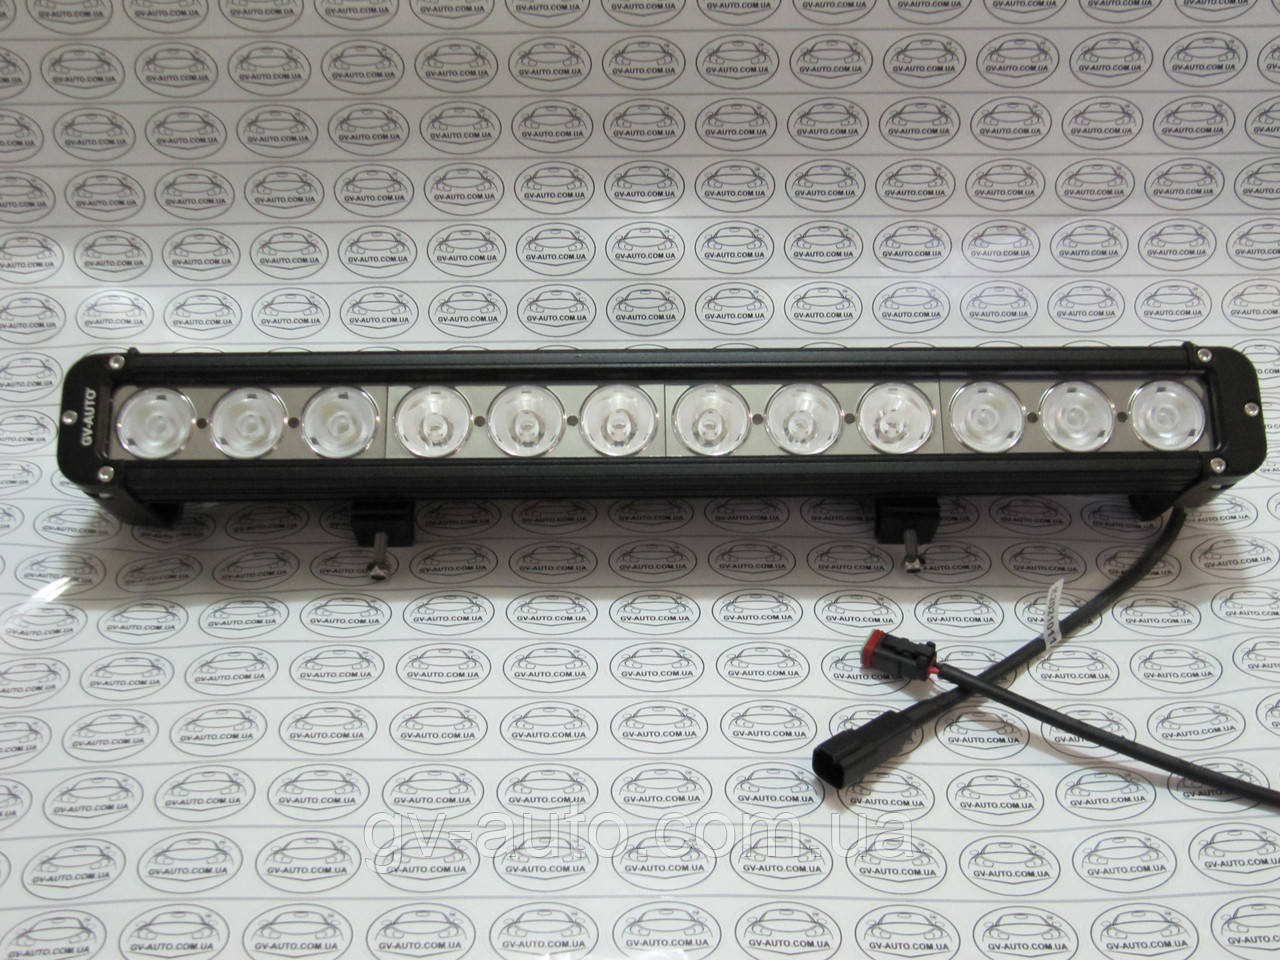 Додаткова фара - балка LED GV-S10120Combo . 120 Вт.52см.